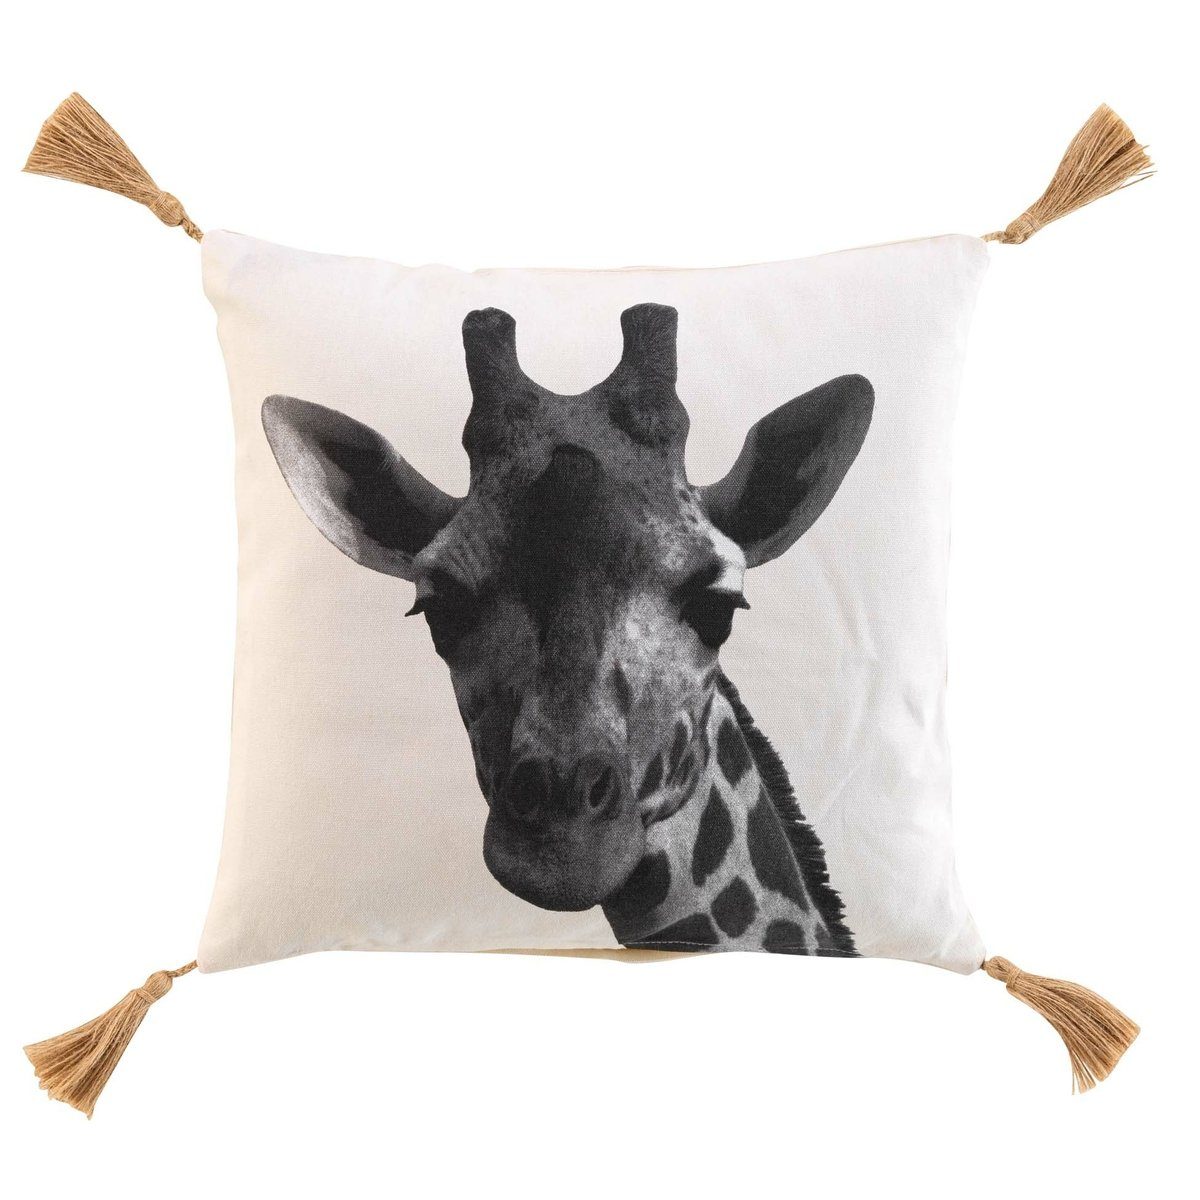 Macosa Home Dekokissen Giraffe weiß schwarz Baumwolle 40x40 cm inklusive Füllung Quasten, Sofakissen Dekokissen Zierkissen